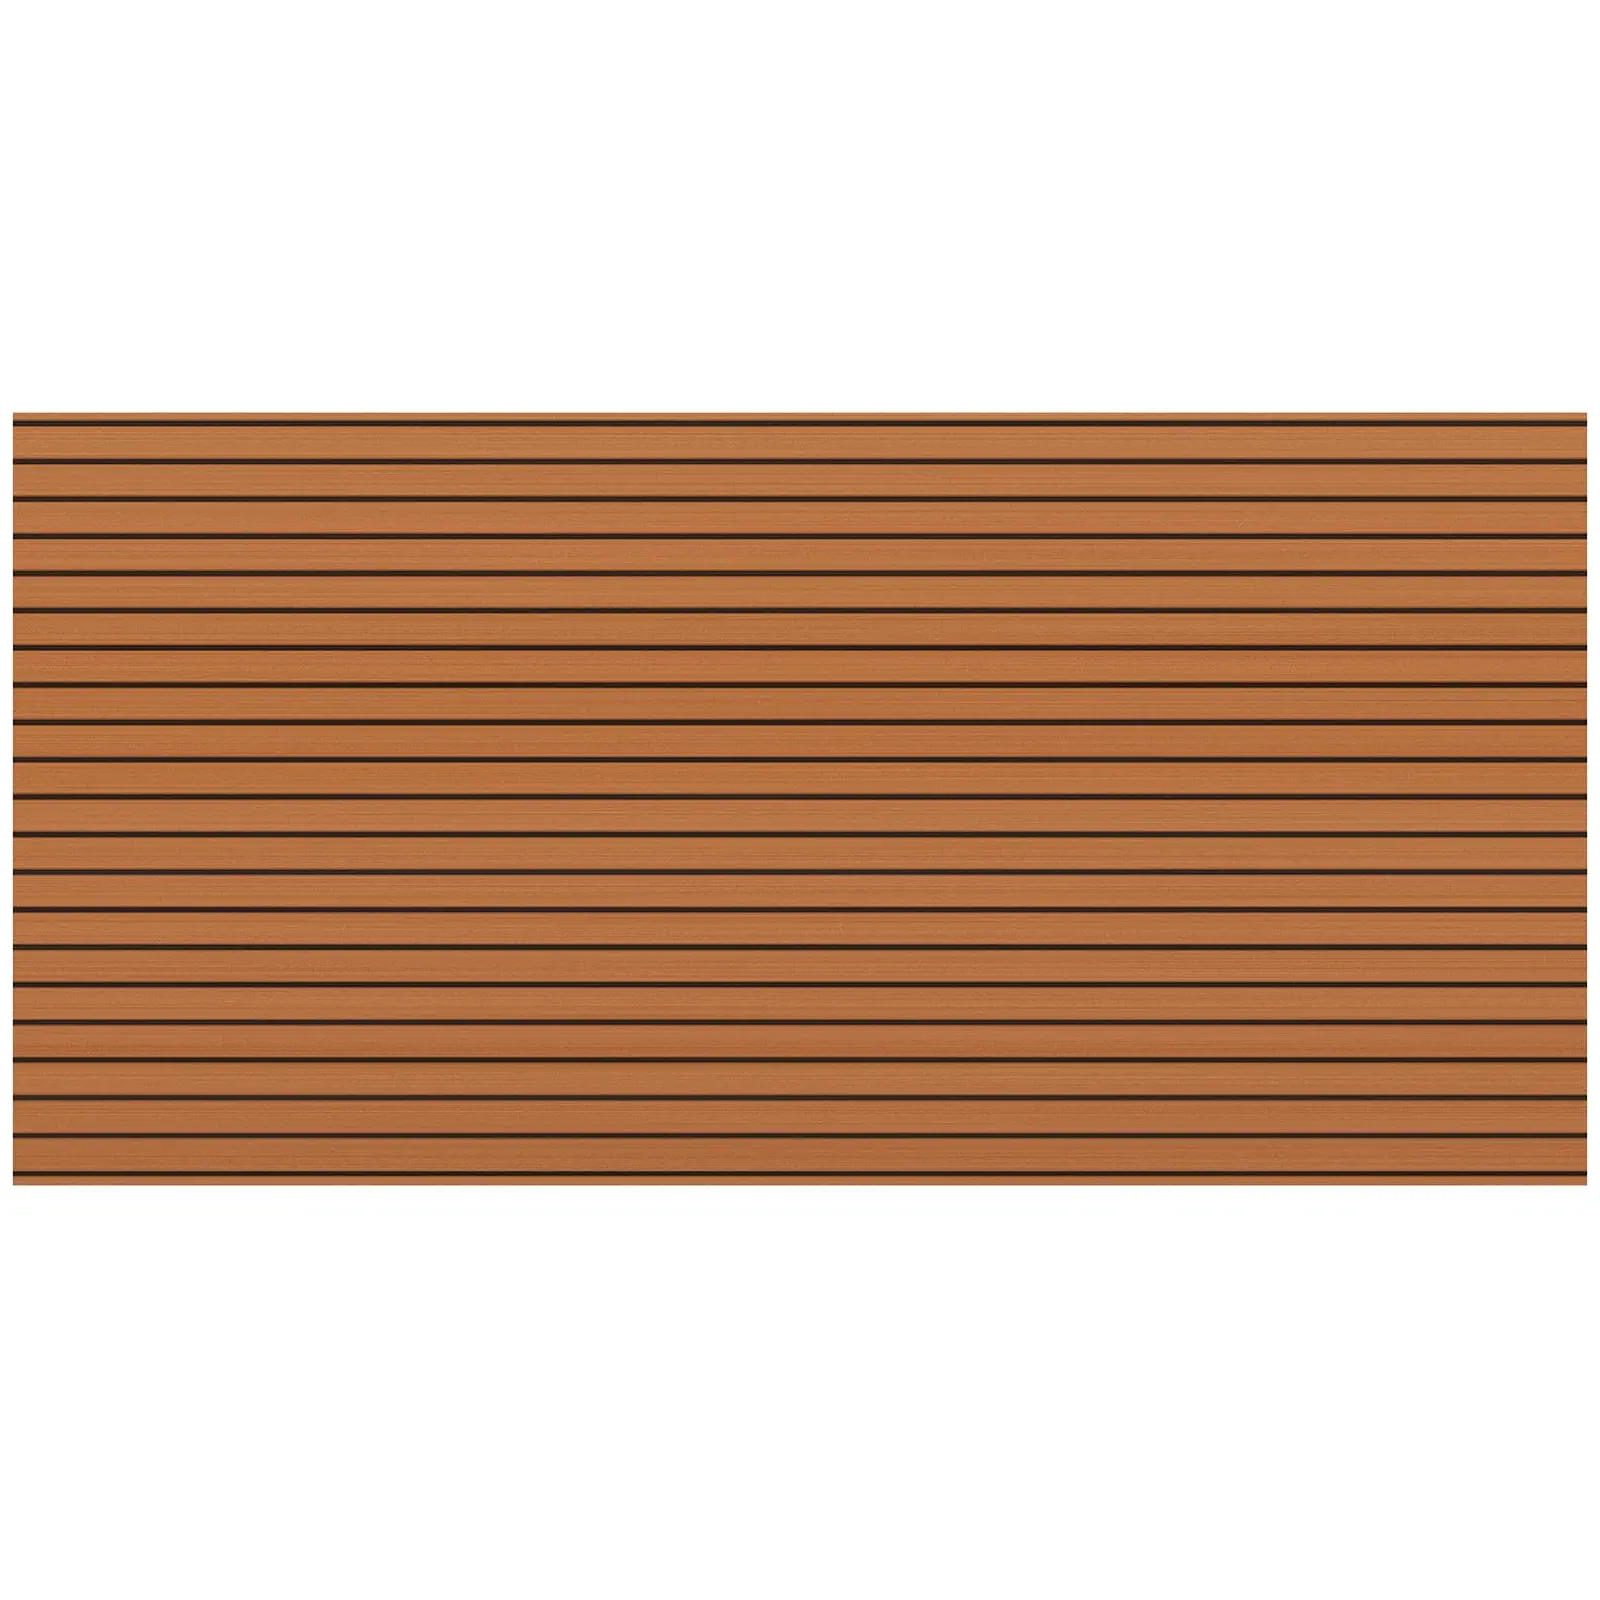 Gulv til båd - 240 x 120 cm - brunt og sort